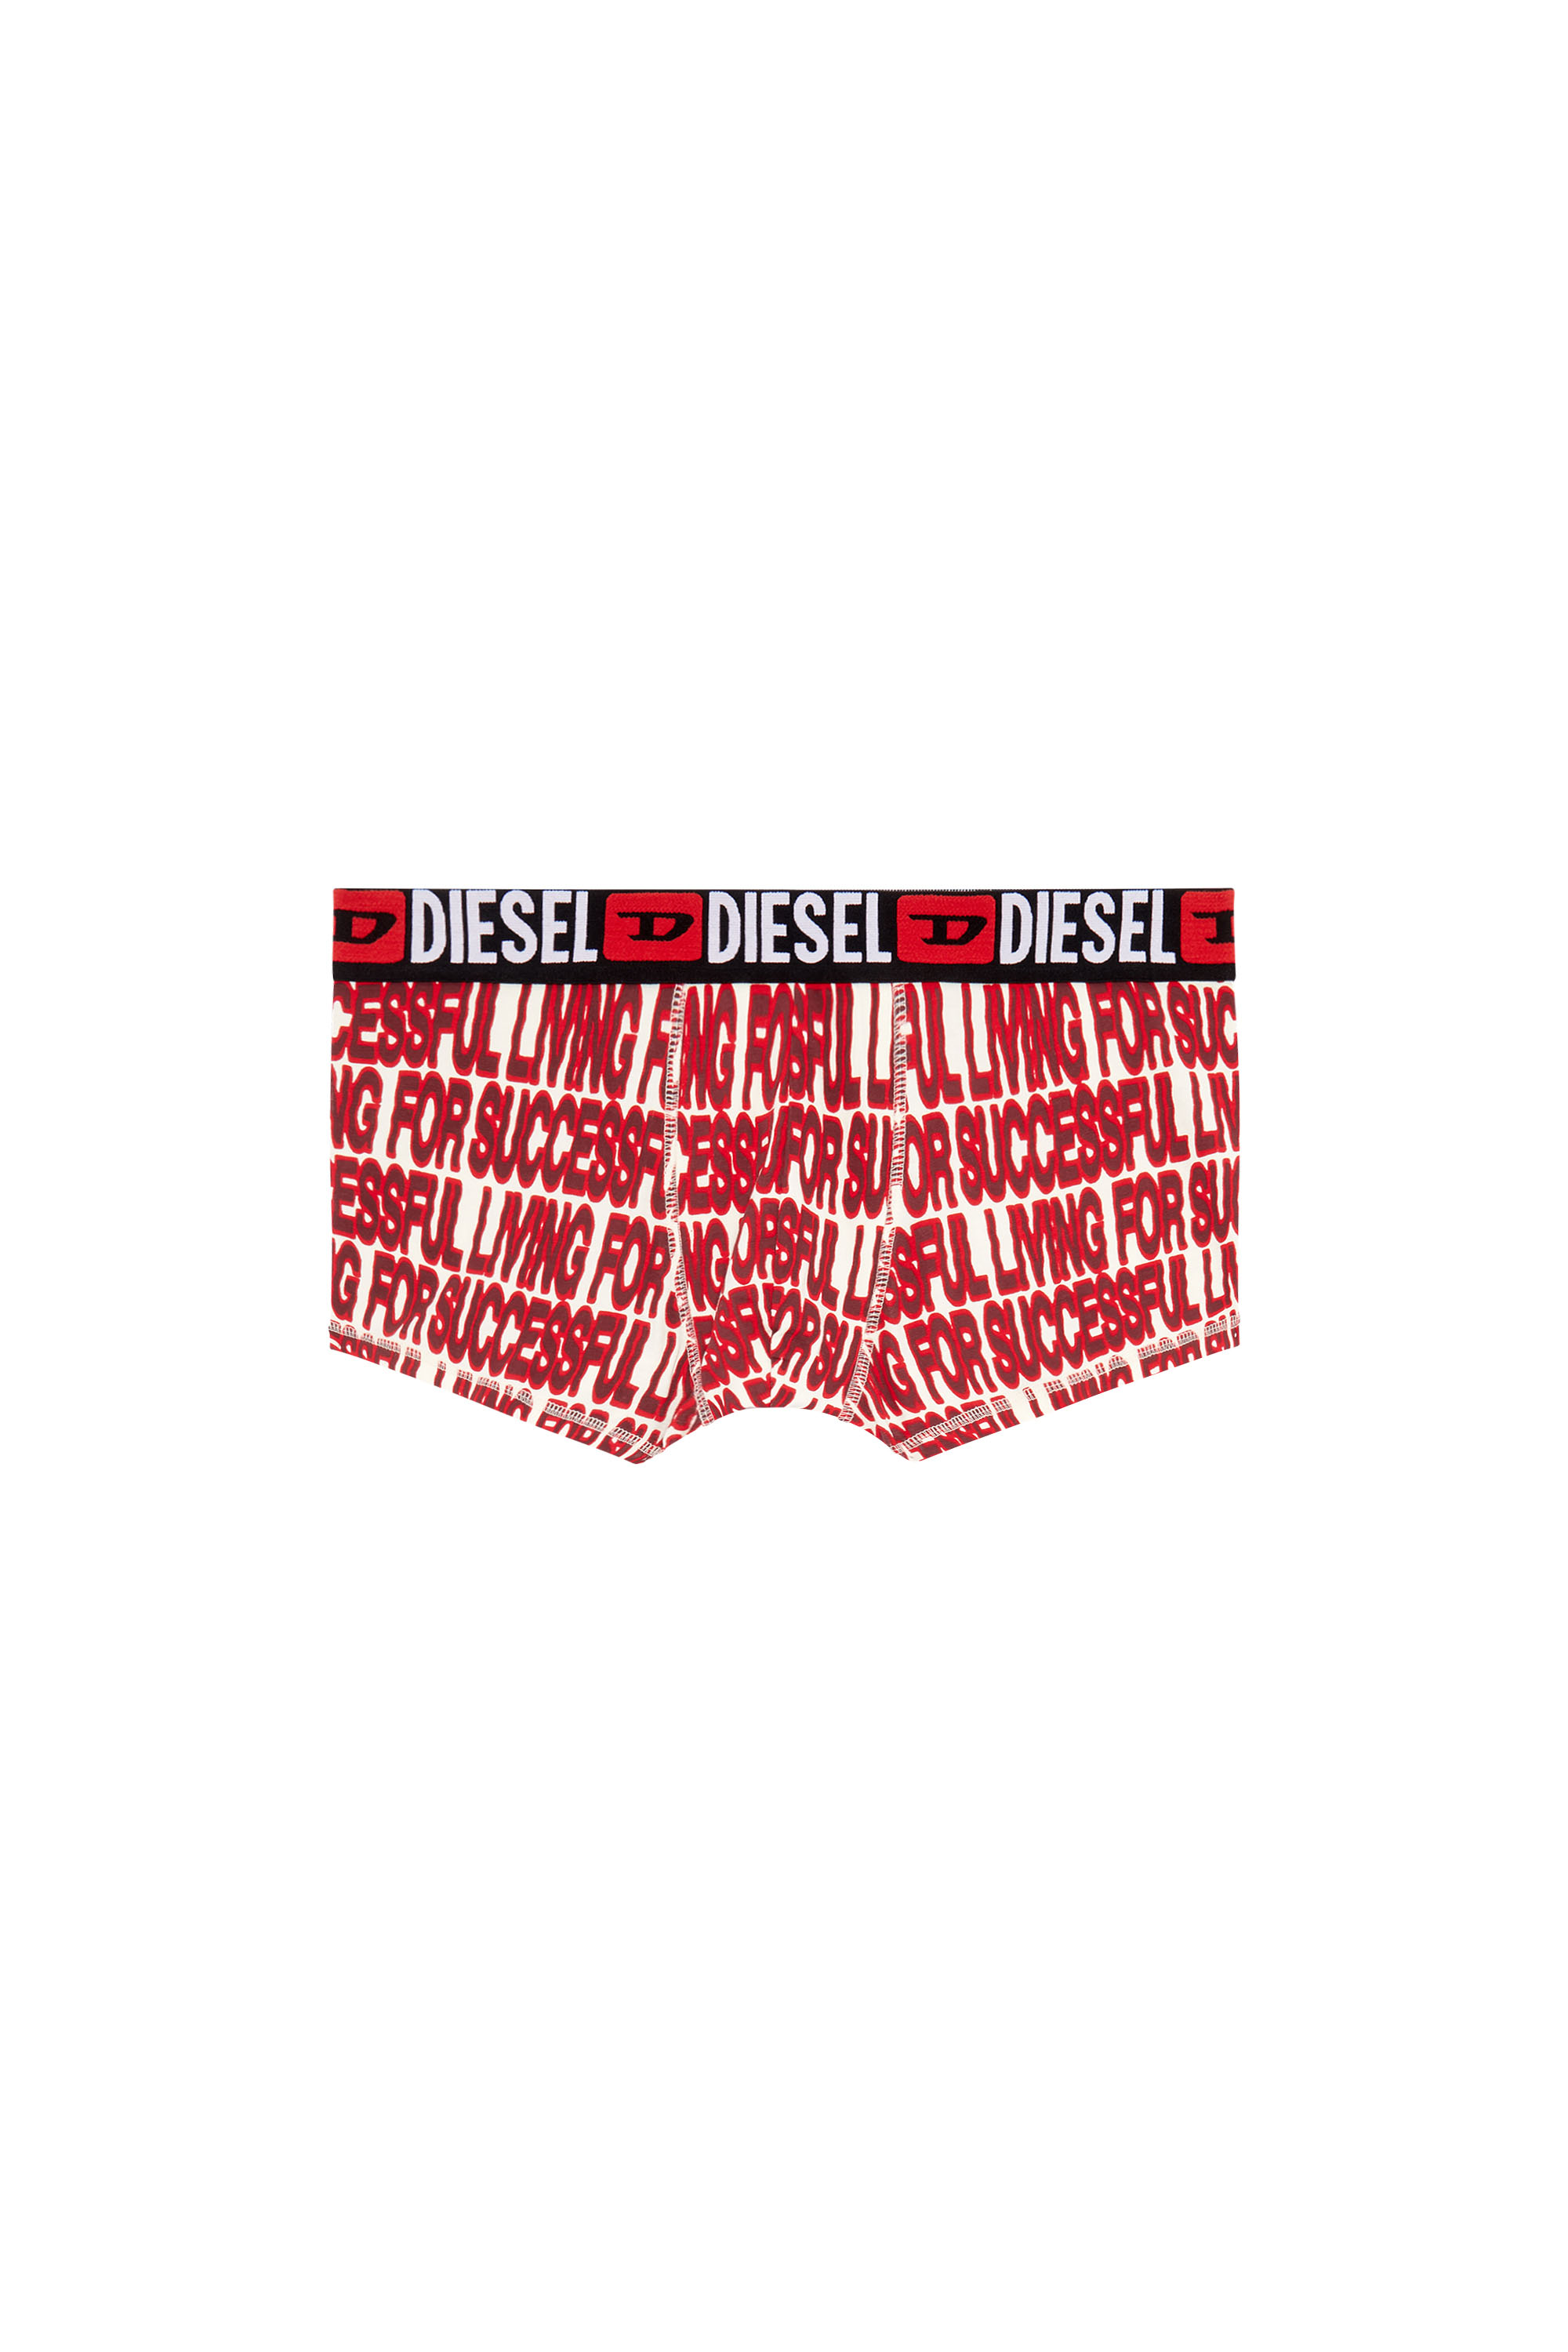 Diesel - Retropants mit Print - Boxershorts - Herren - Bunt